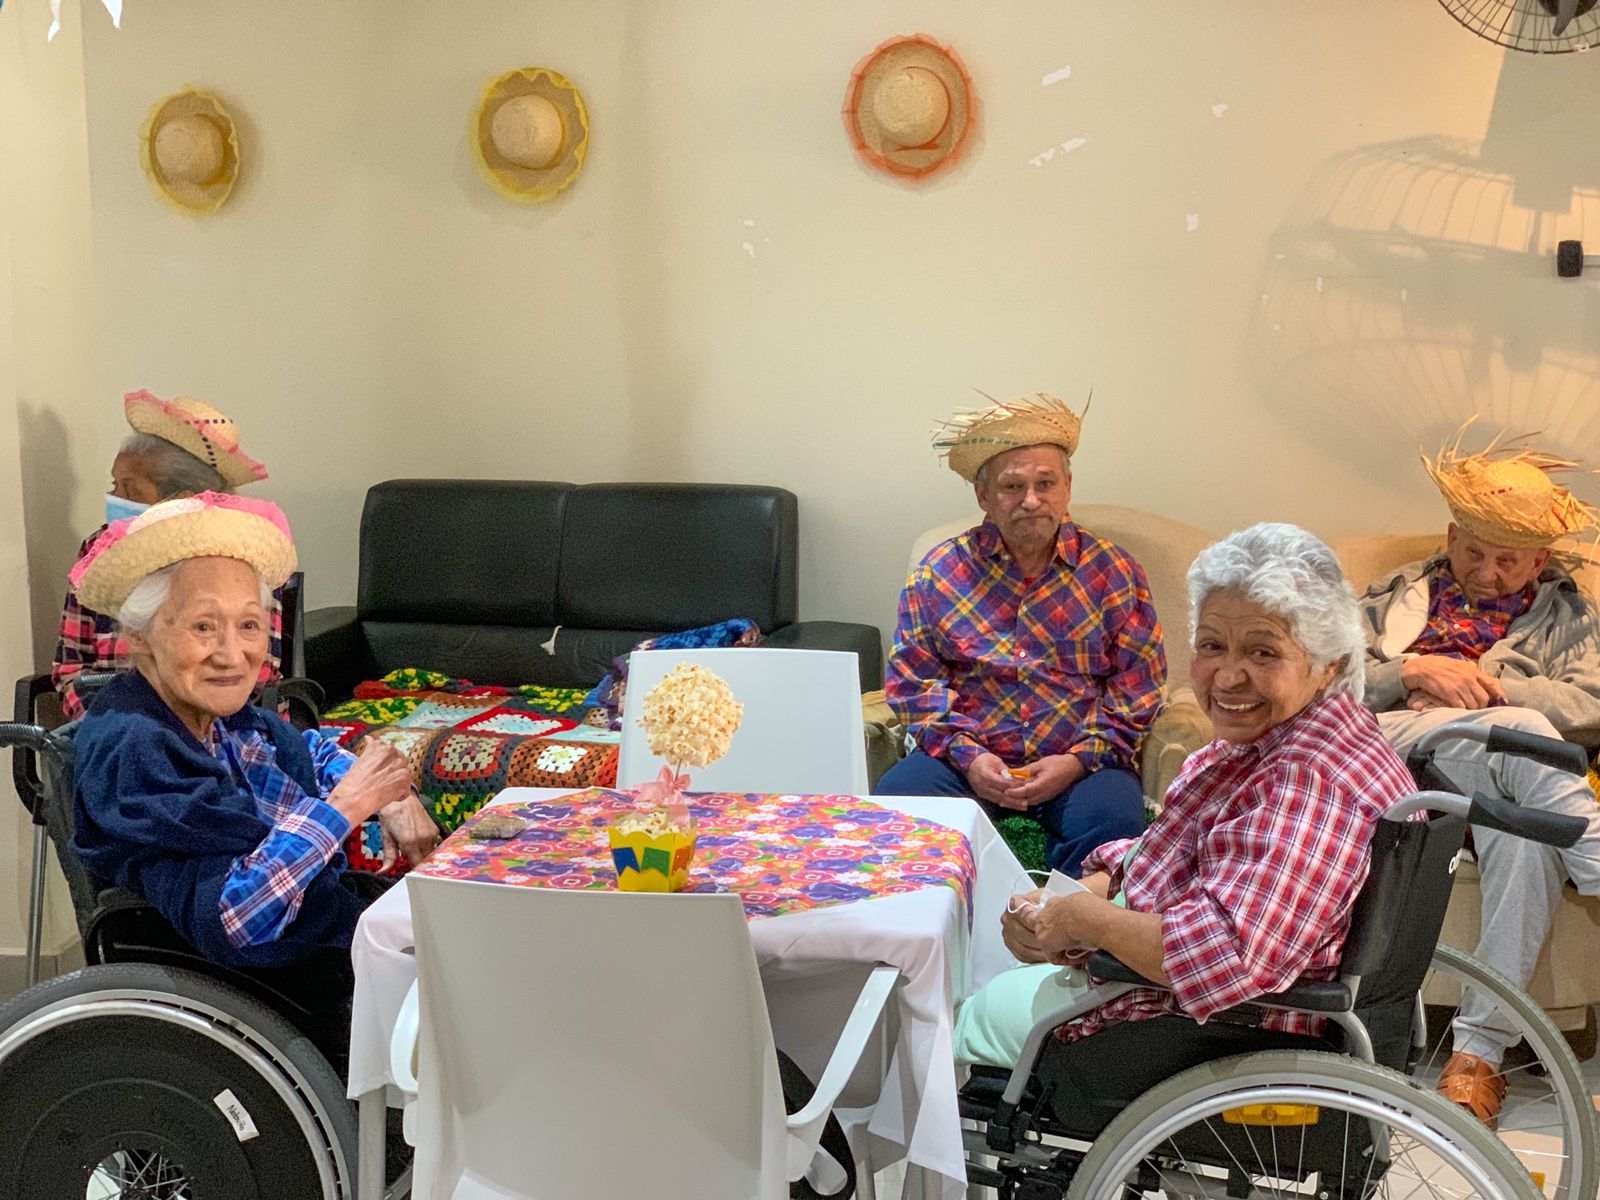 Na imagem aparecem quatro idosos sentados em uma mesa, vestidos de xadrez. 